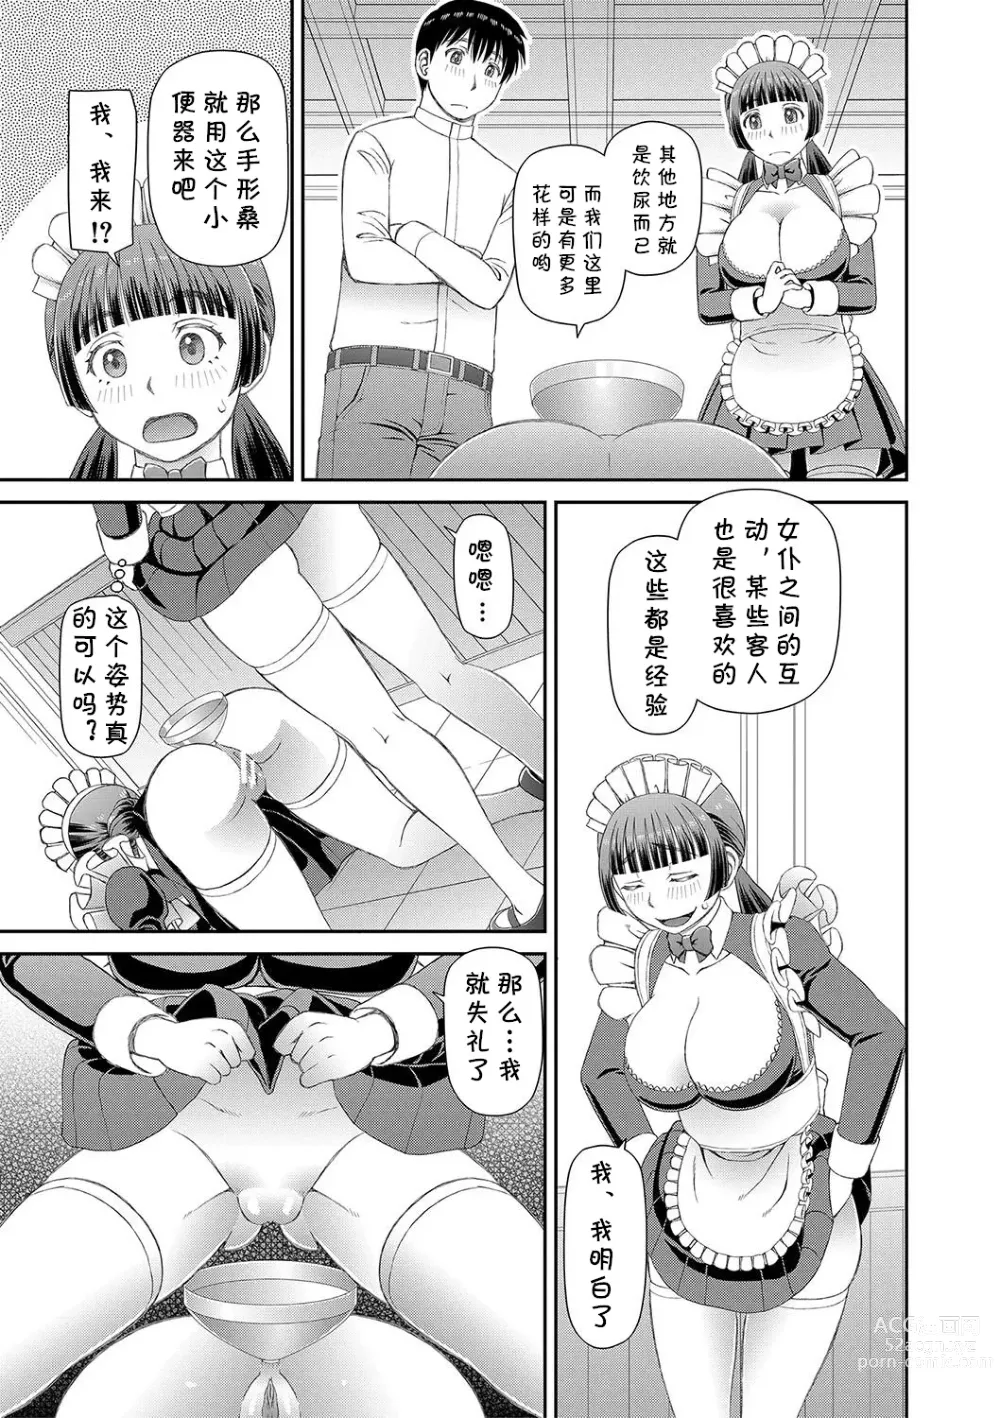 Page 13 of manga Ano Hito ni...